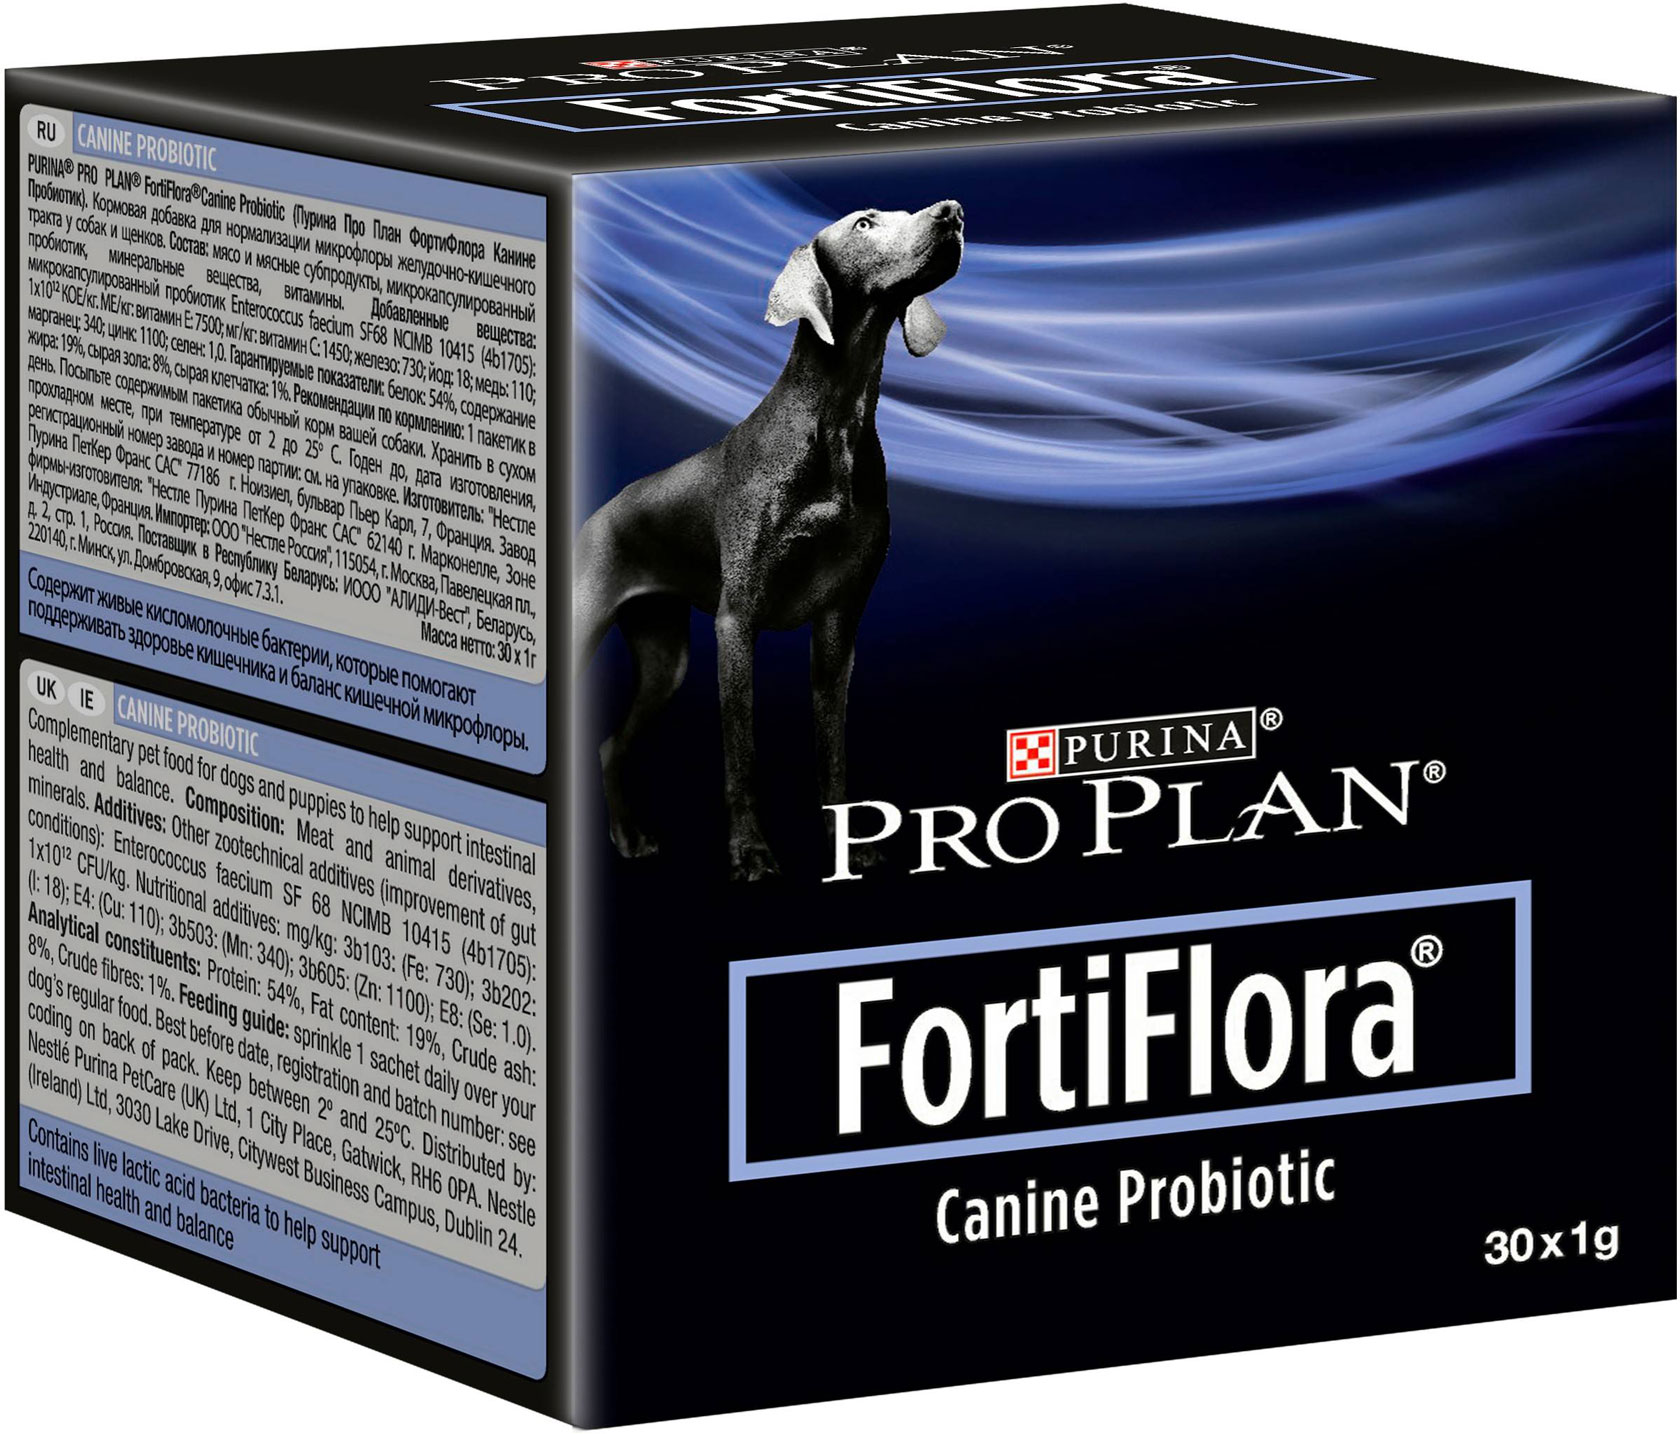 PRO PLAN FORTIFLORA CANINE PROBIOTIC – харчова добавка з пробіотиком для собак для підтримки шлунково-кишкового тракту